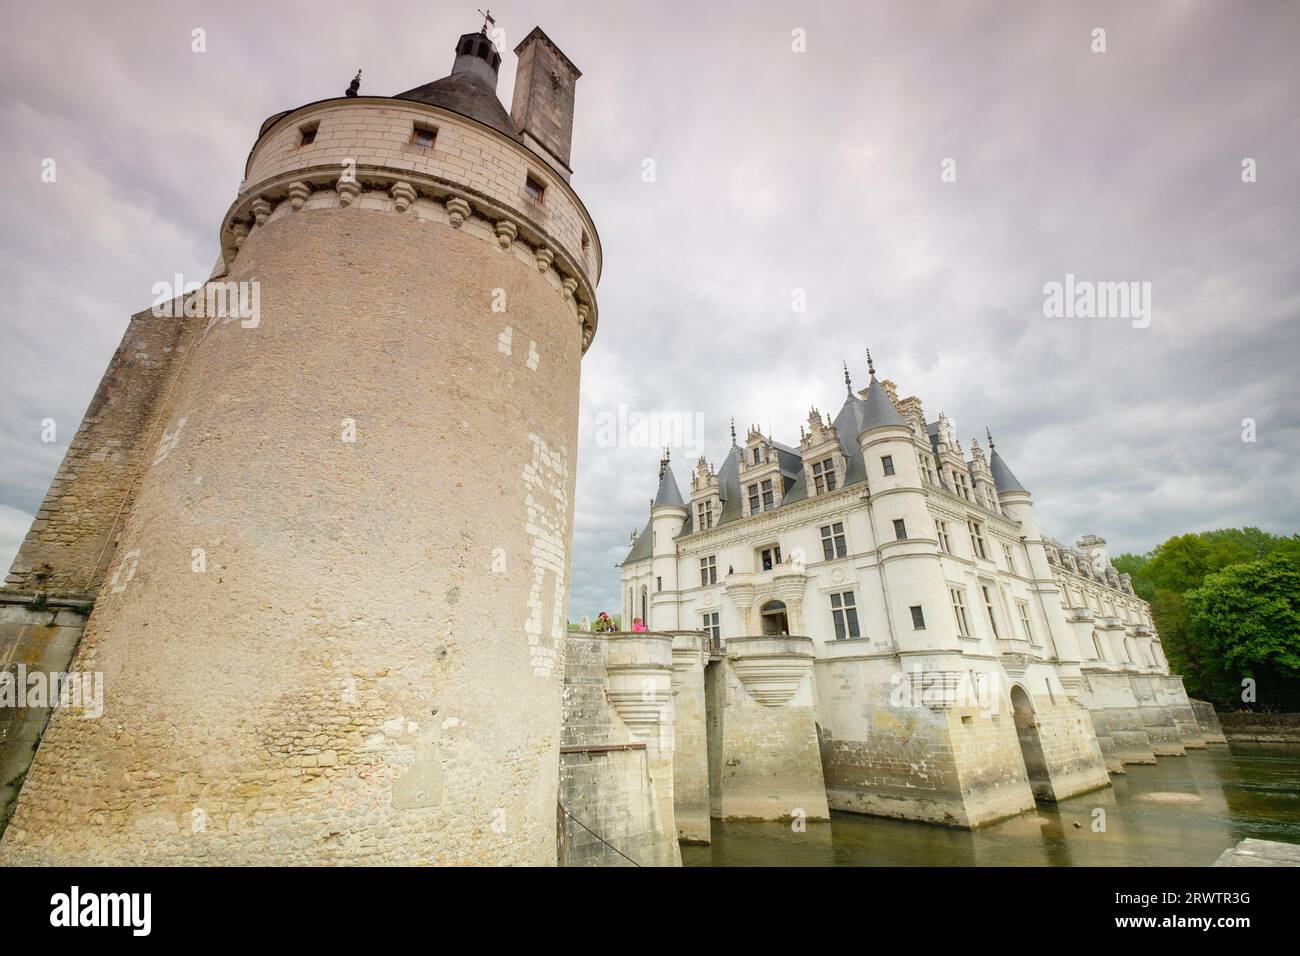 Tour des Marques, castillo de Chenonceau, siglo XVI, Chenonceaux,  departamento de Indre y Loira,France,Western Europe Stock Photo